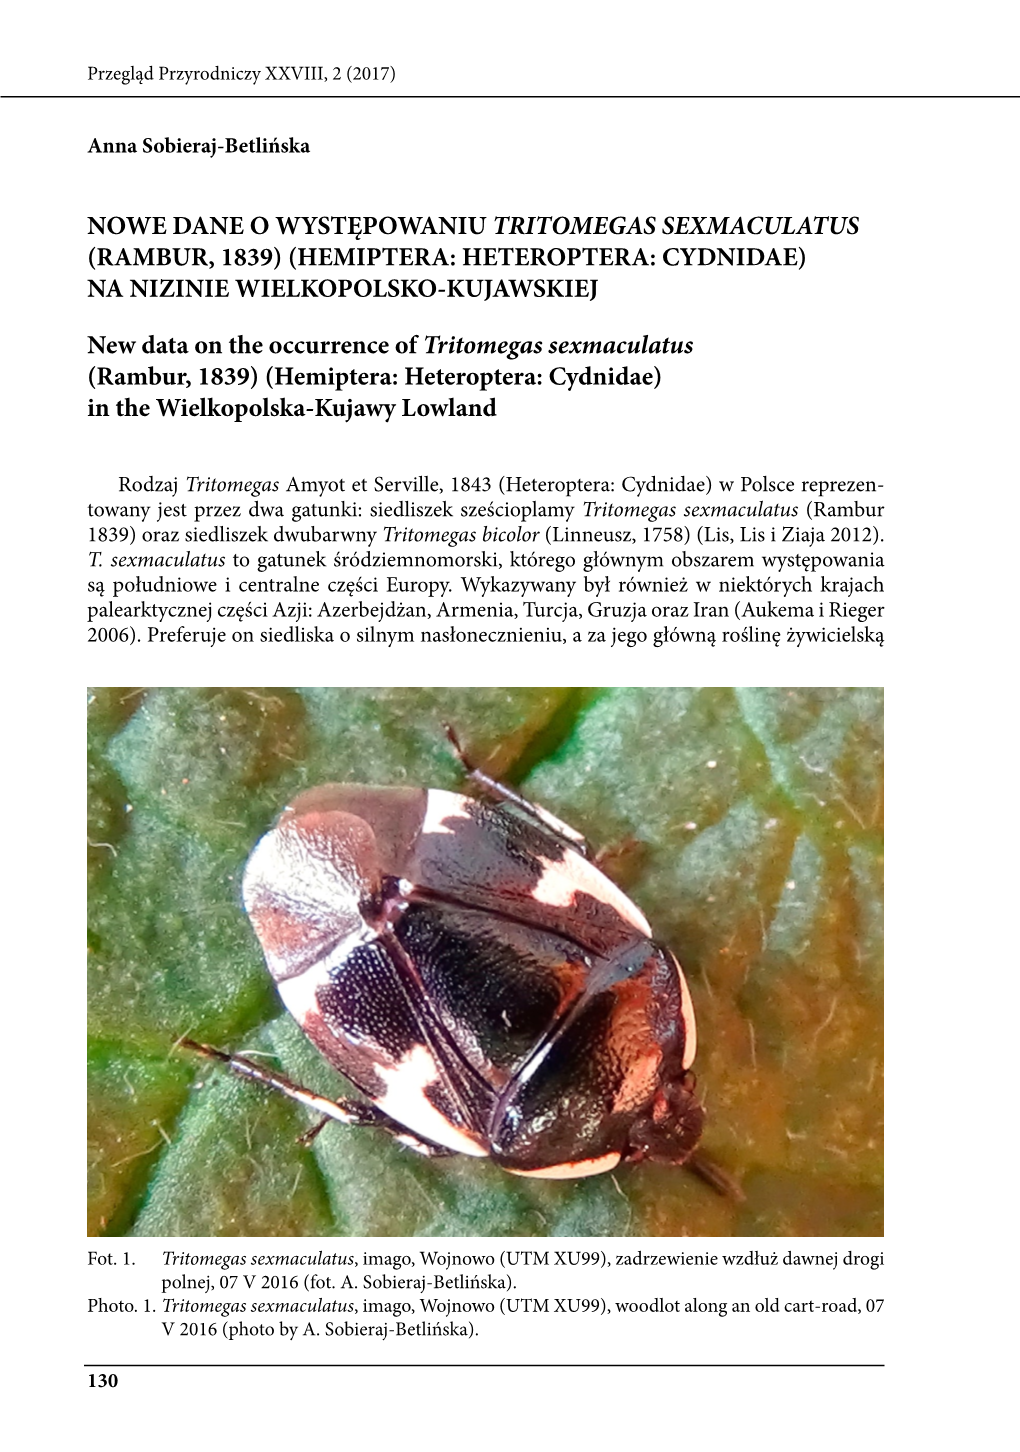 Nowe Dane O Występowaniu Tritomegas Sexmaculatus (Rambur, 1839) (Hemiptera: Heteroptera: Cydnidae) Na Nizinie Wielkopolsko-Kujawskiej